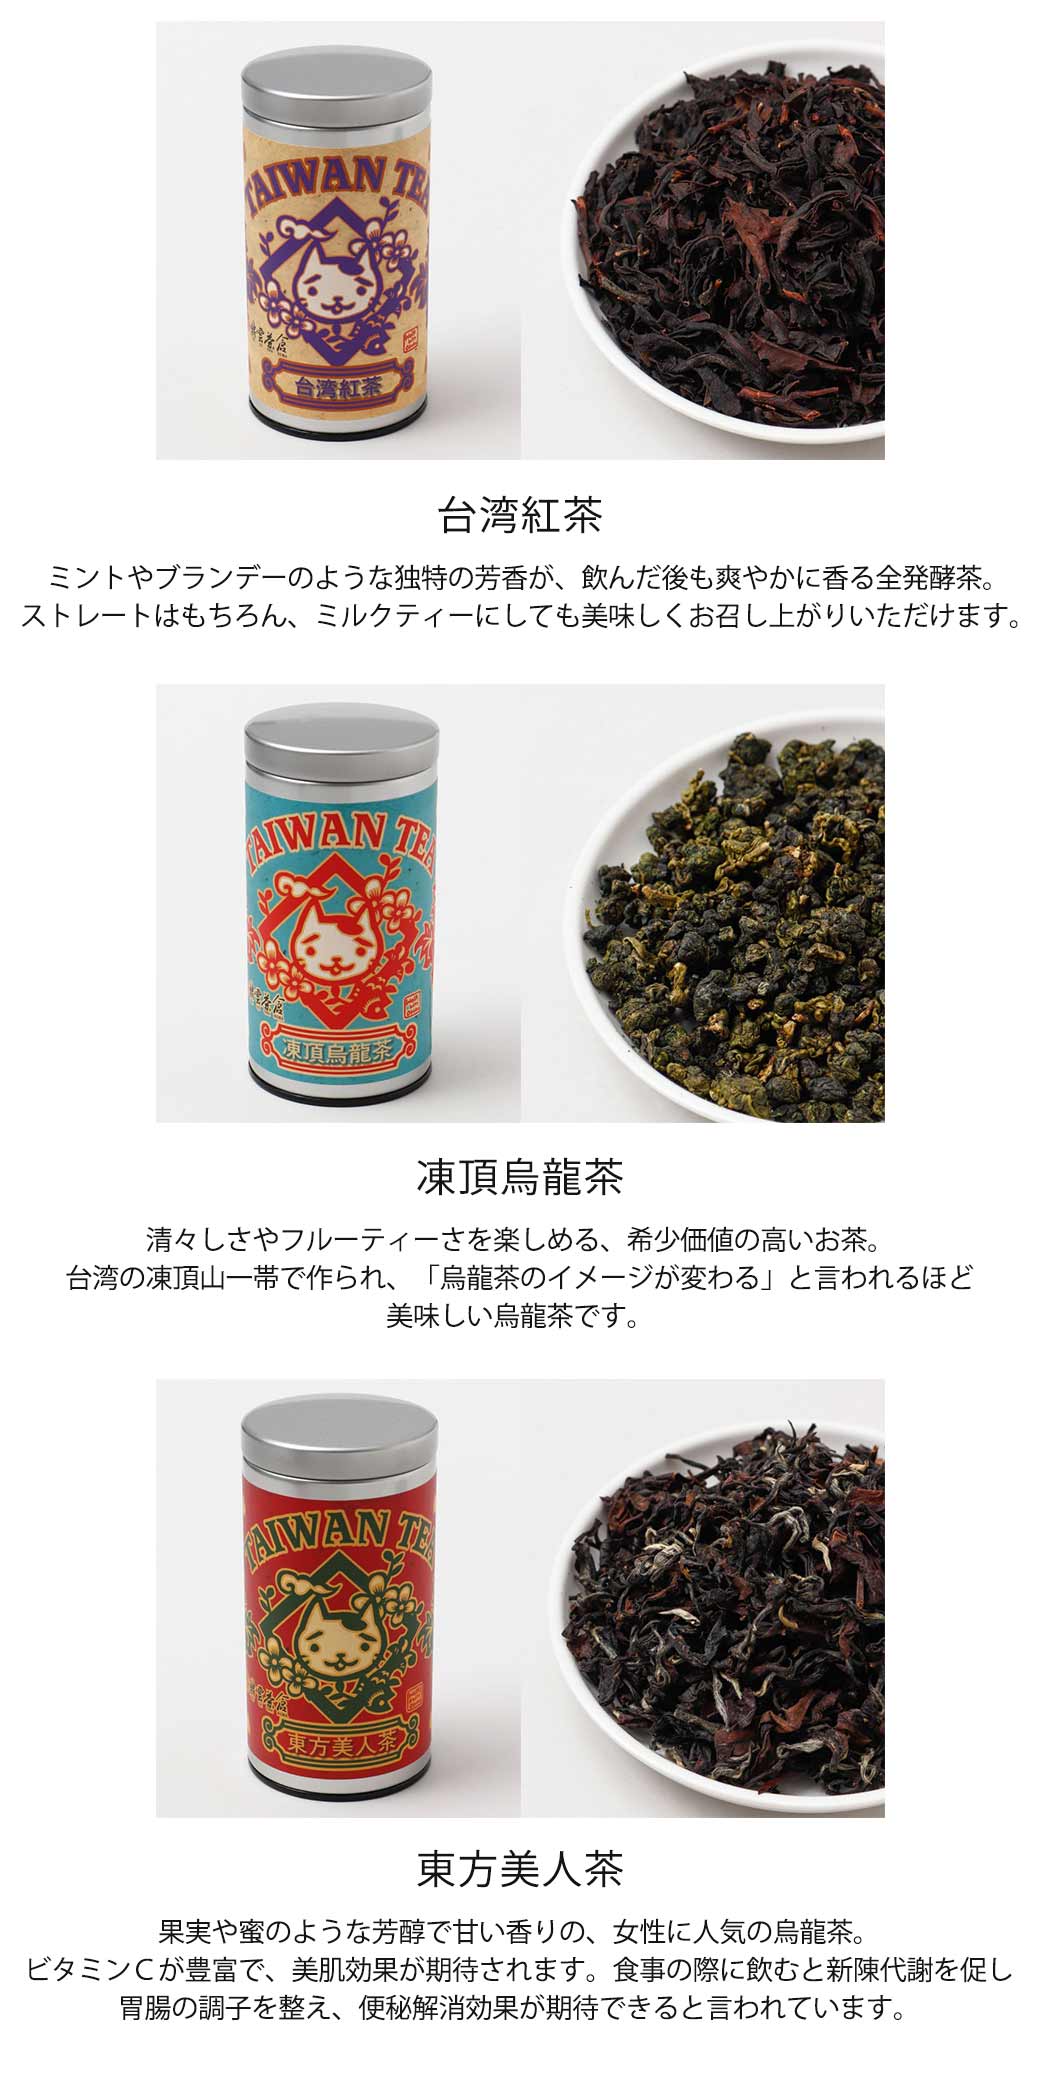 おかか台湾お茶缶(凍頂烏龍茶): 『チャイハネ』公式通販